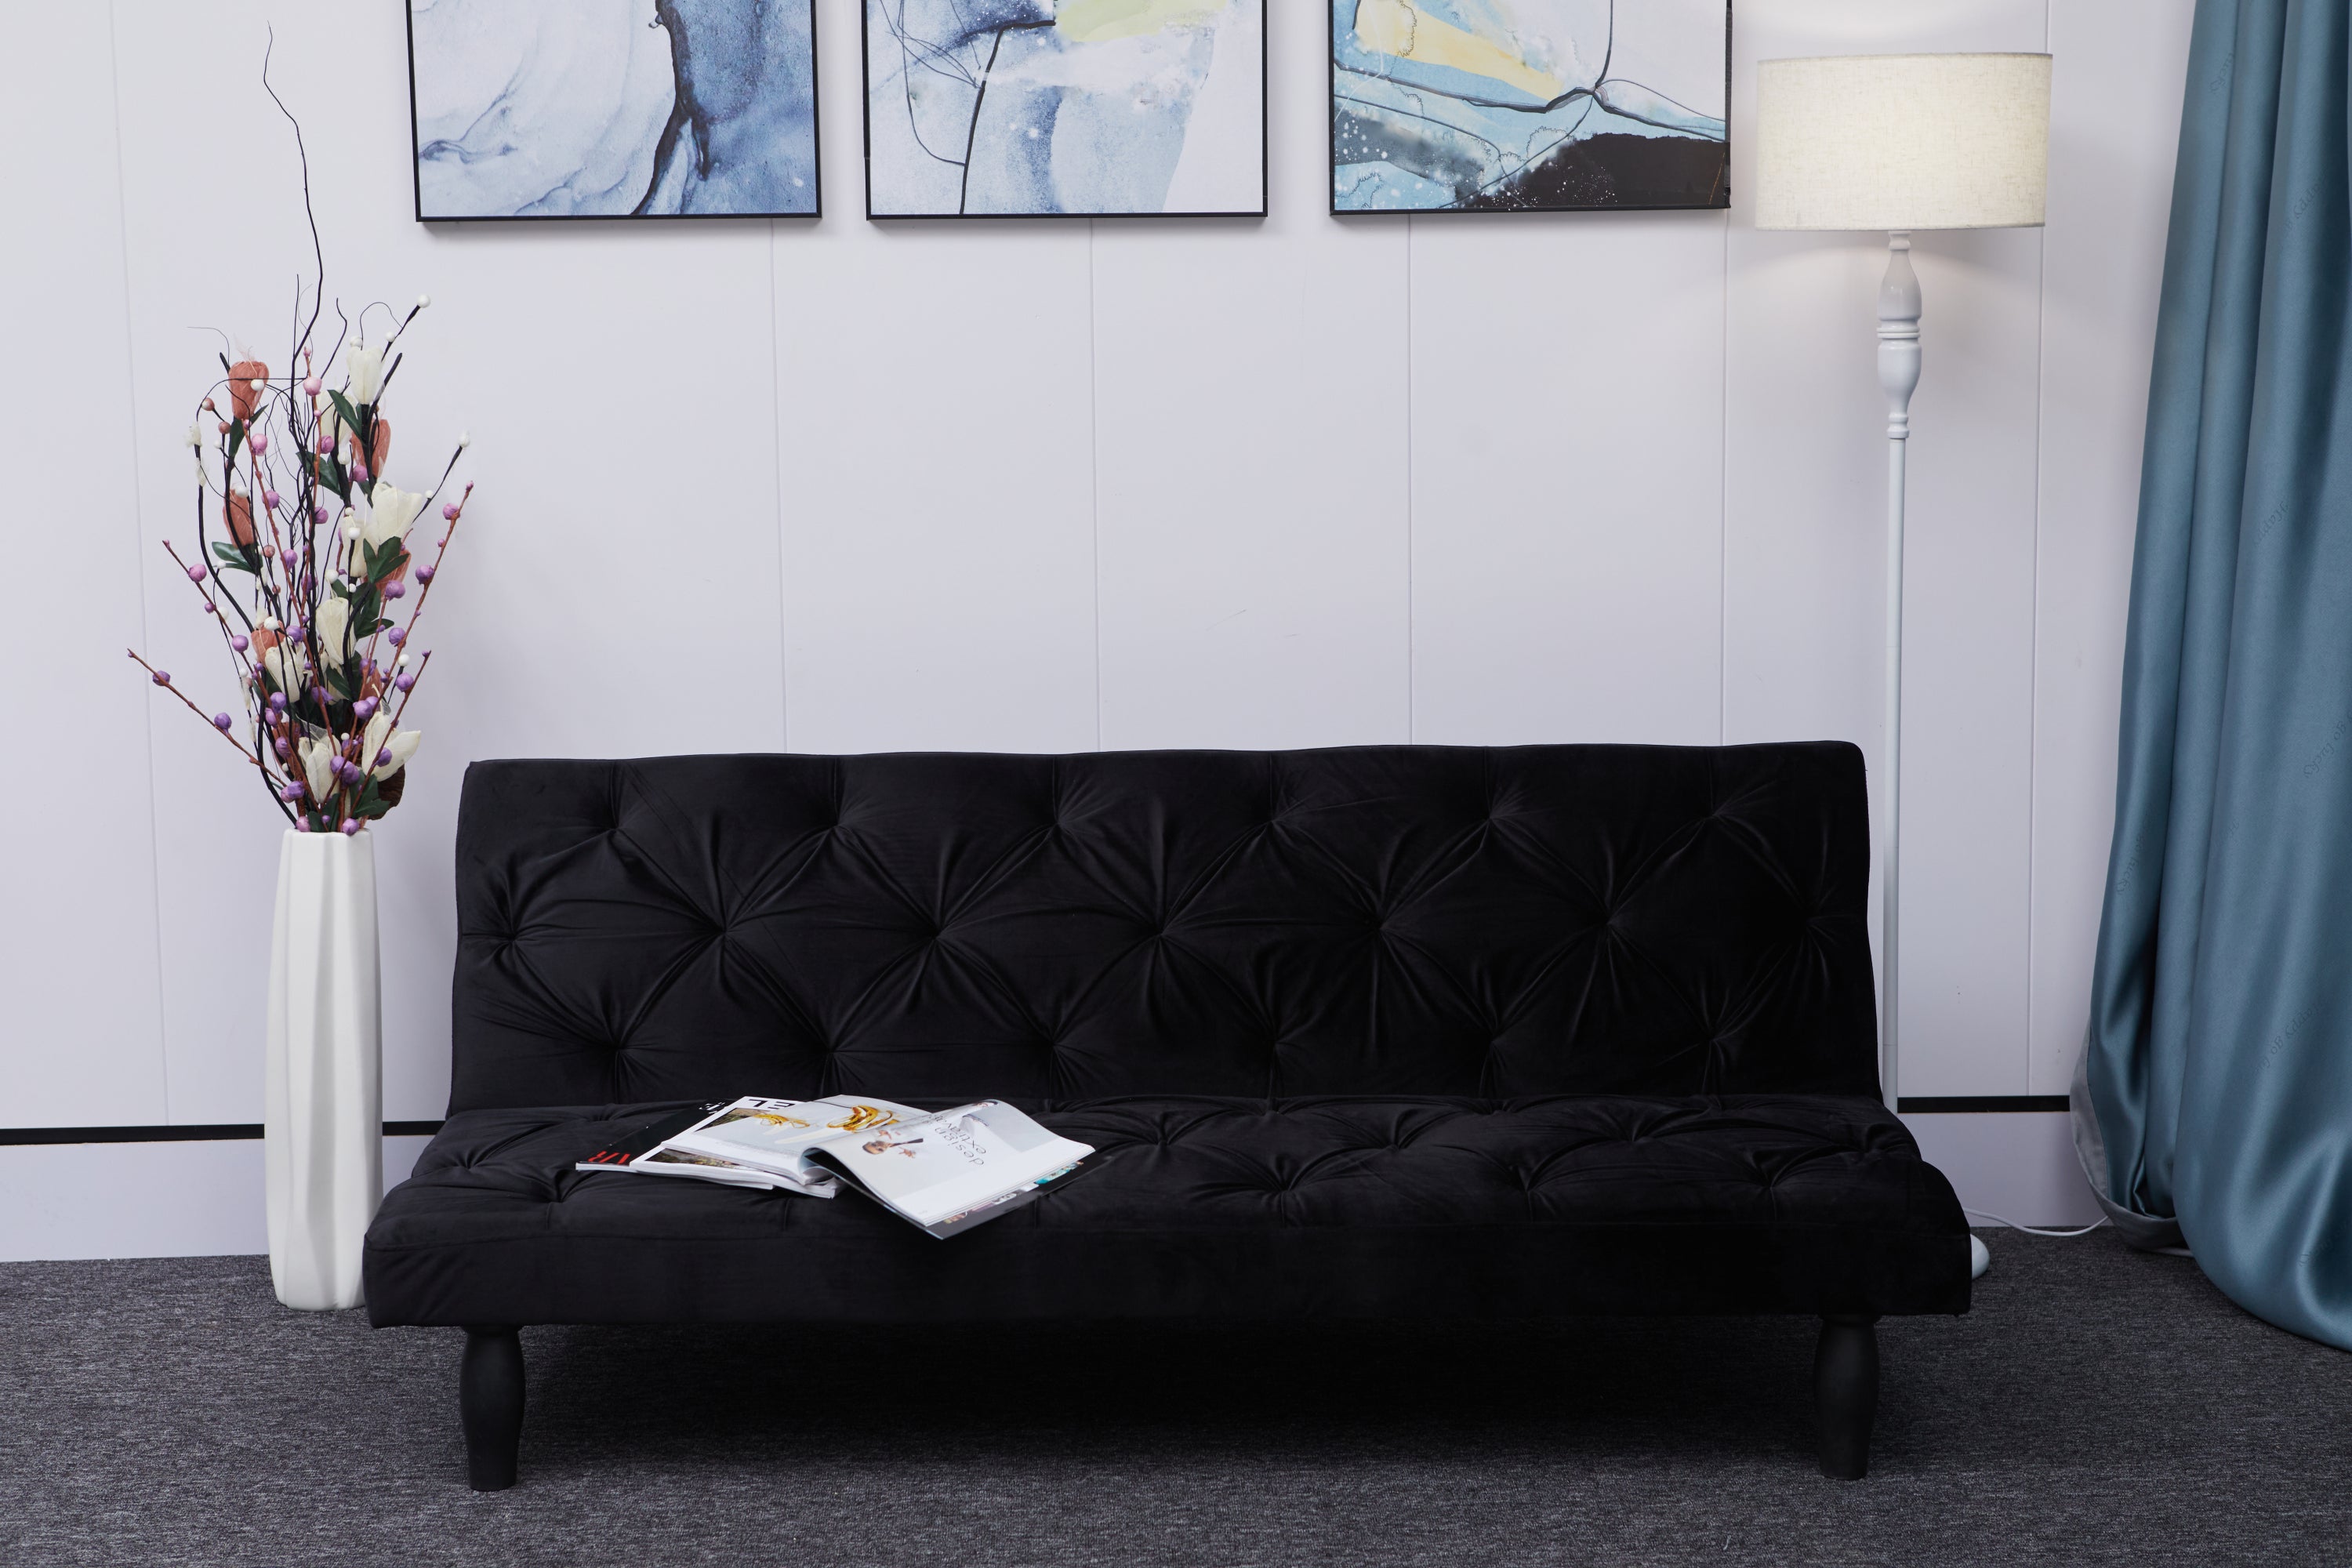 Black Velvet Sofa Bed